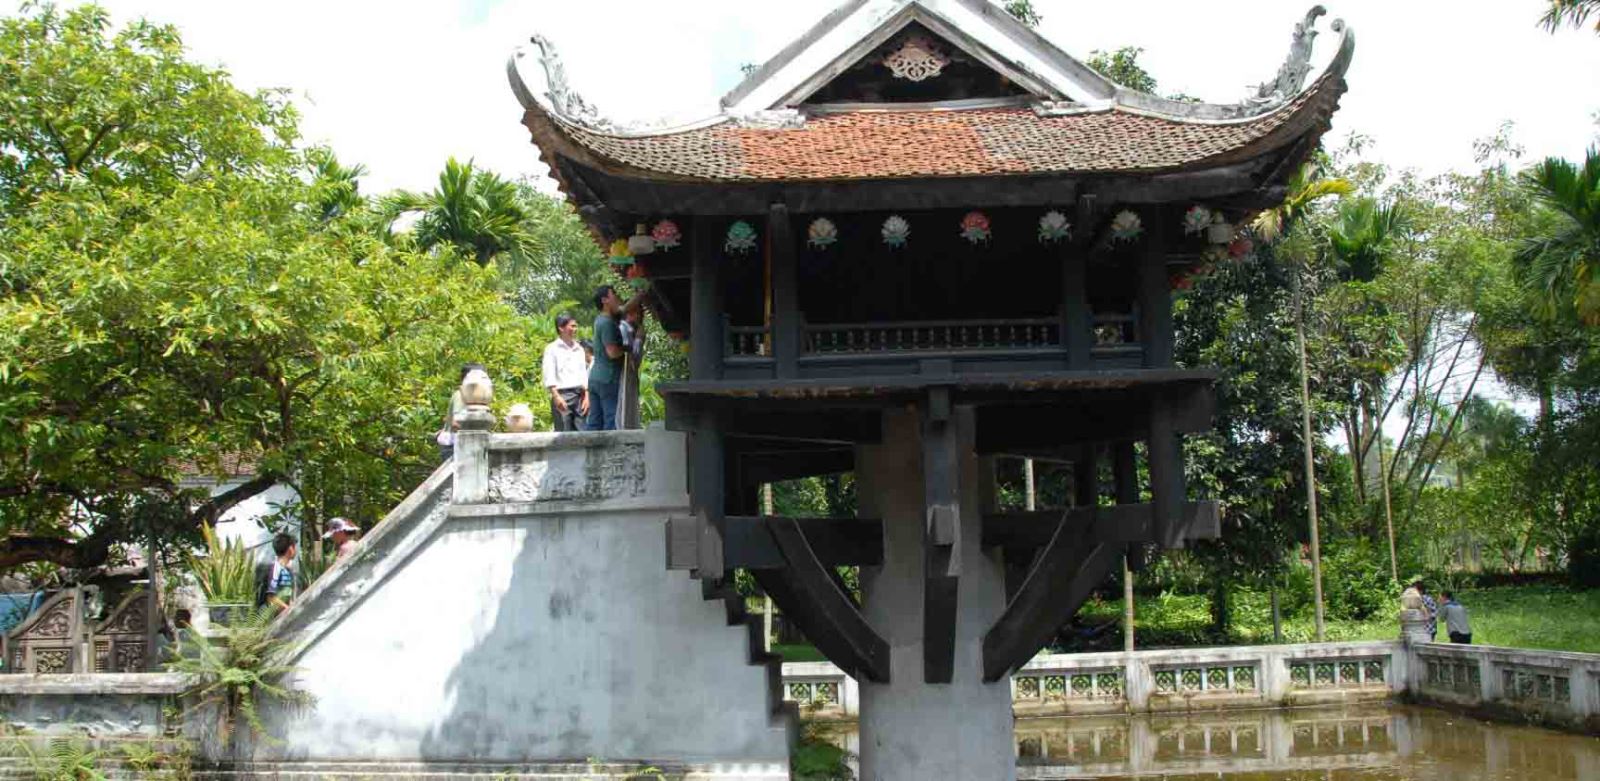  La pagode au pilier unique